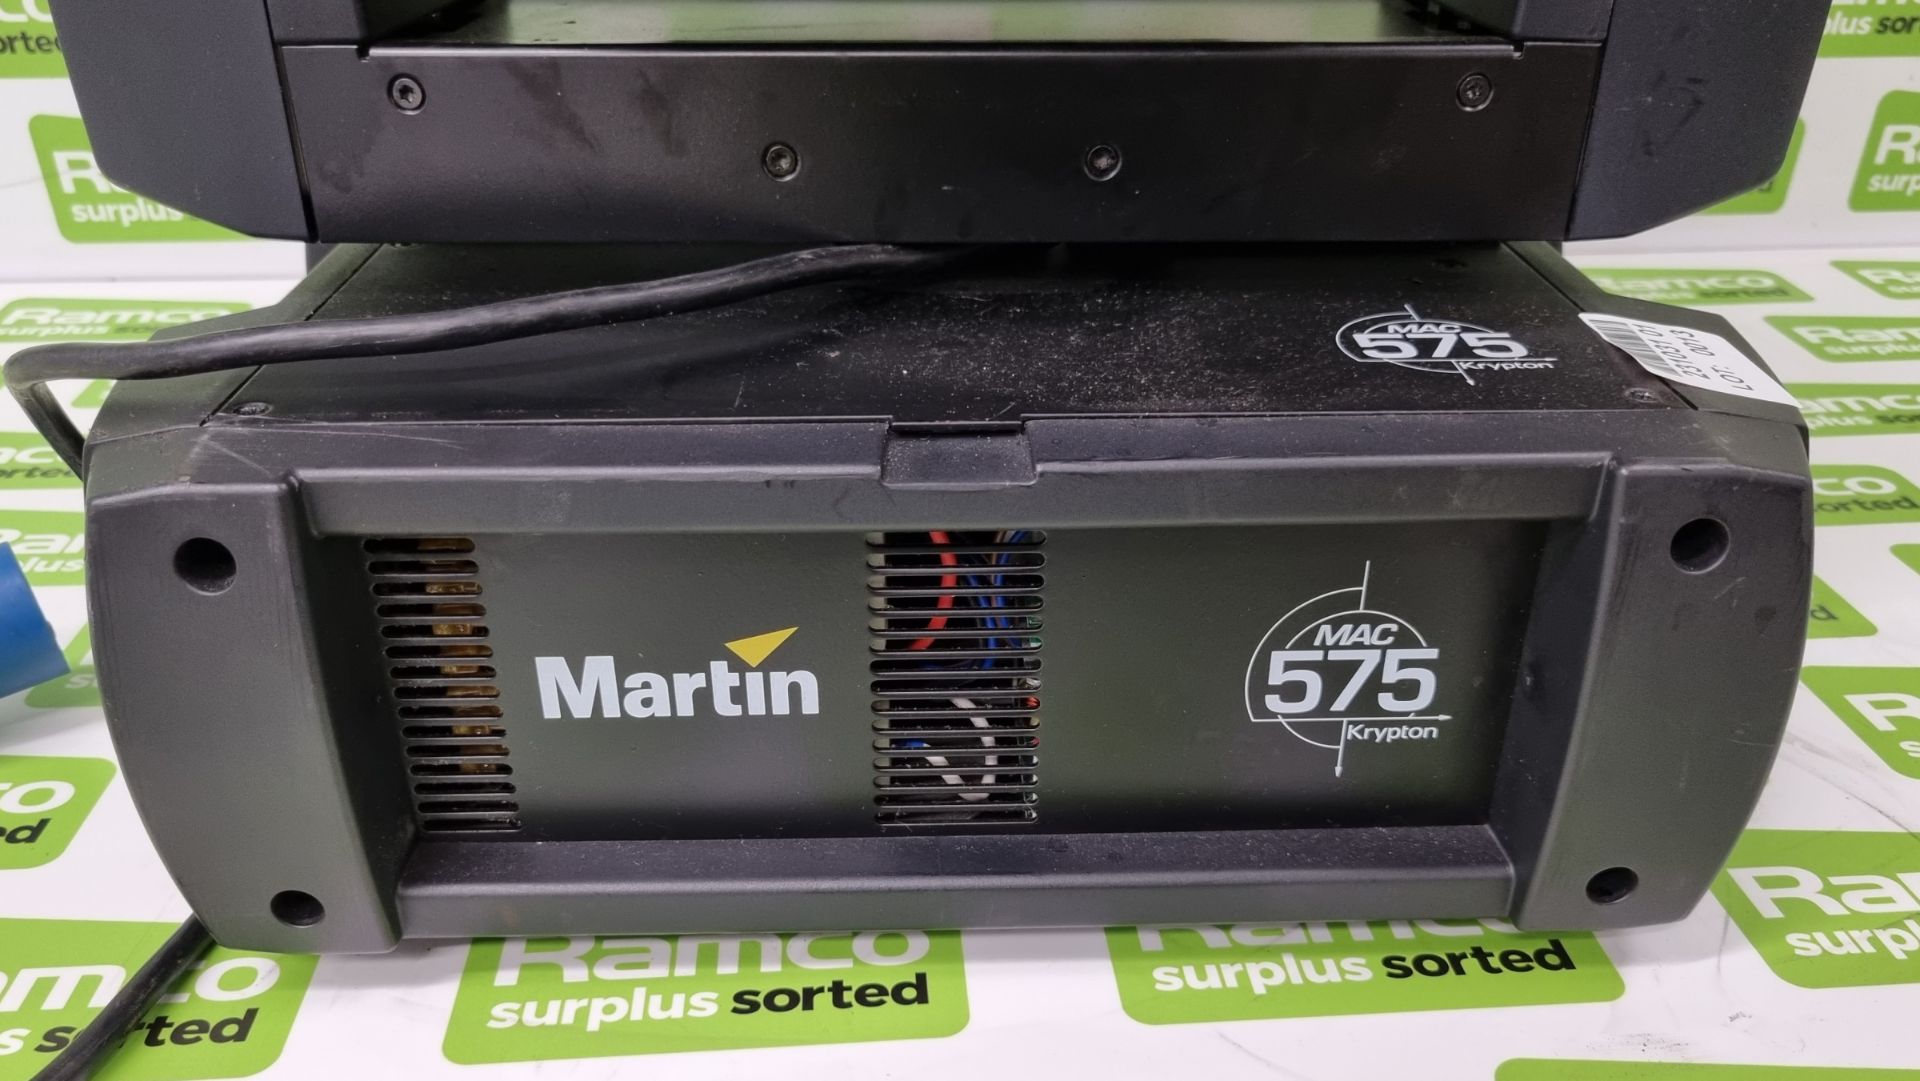 Martin Lighting MAC 575 Krypton 575 watt short-arc high-output discharge moving head spot lamp - Bild 2 aus 8